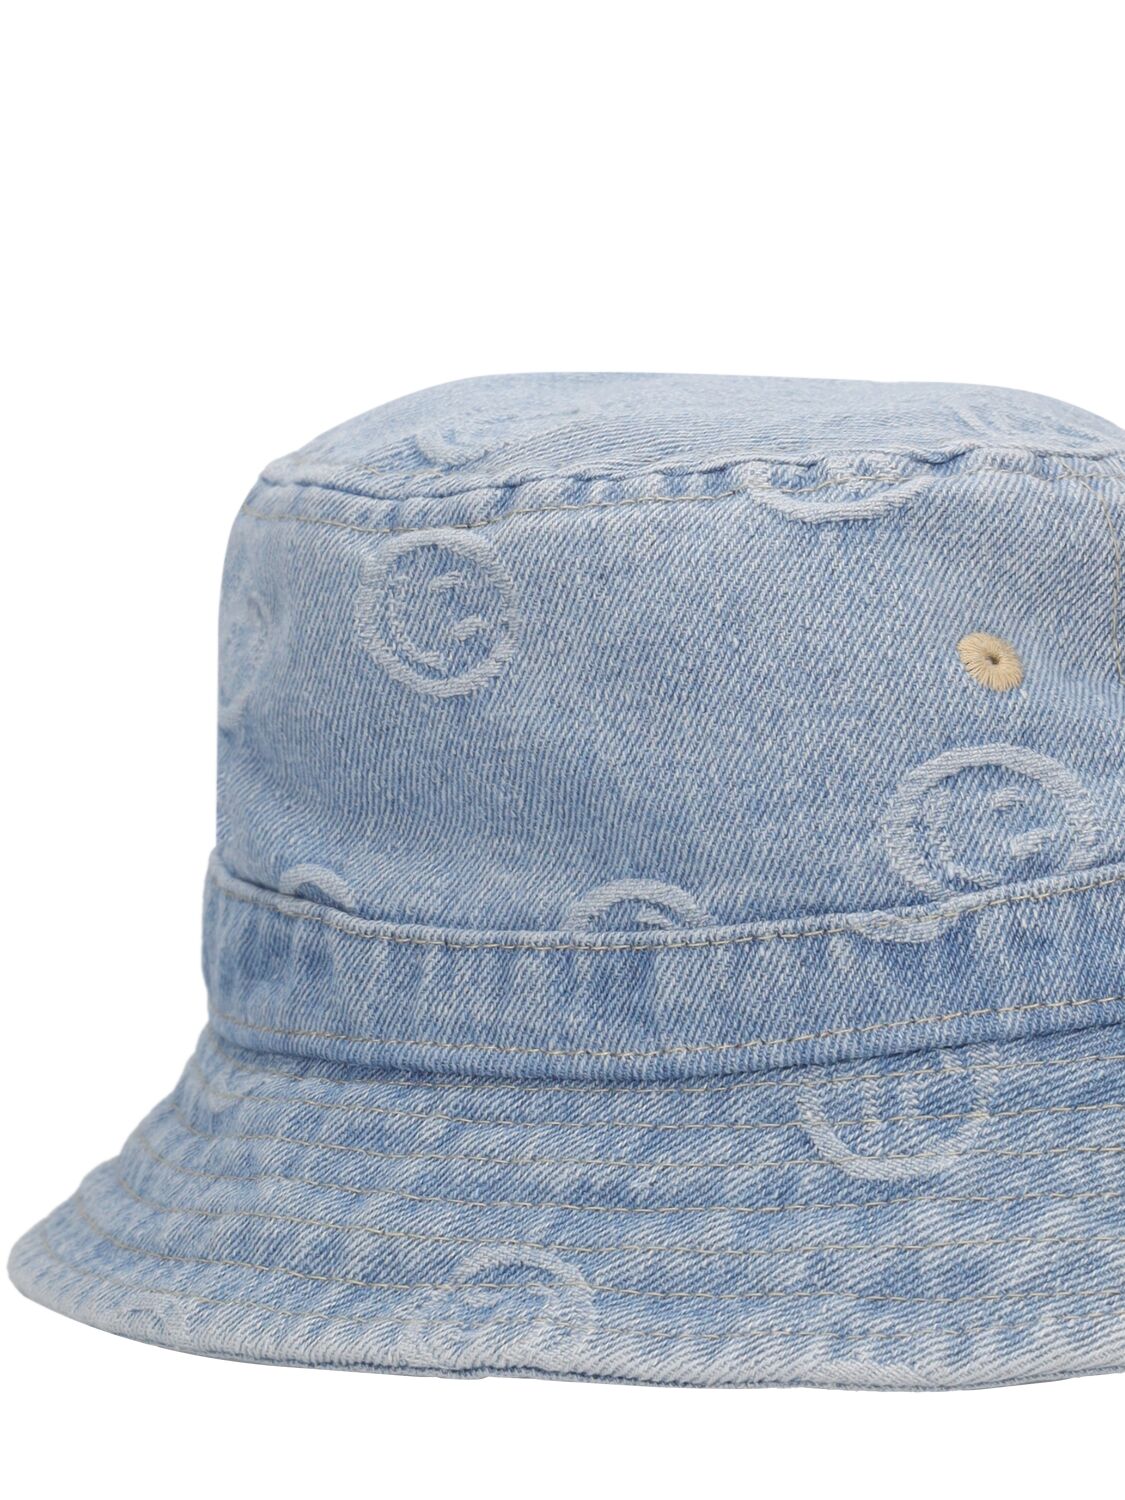 Shop Molo Smile Printed Cotton Denim Bucket Hat